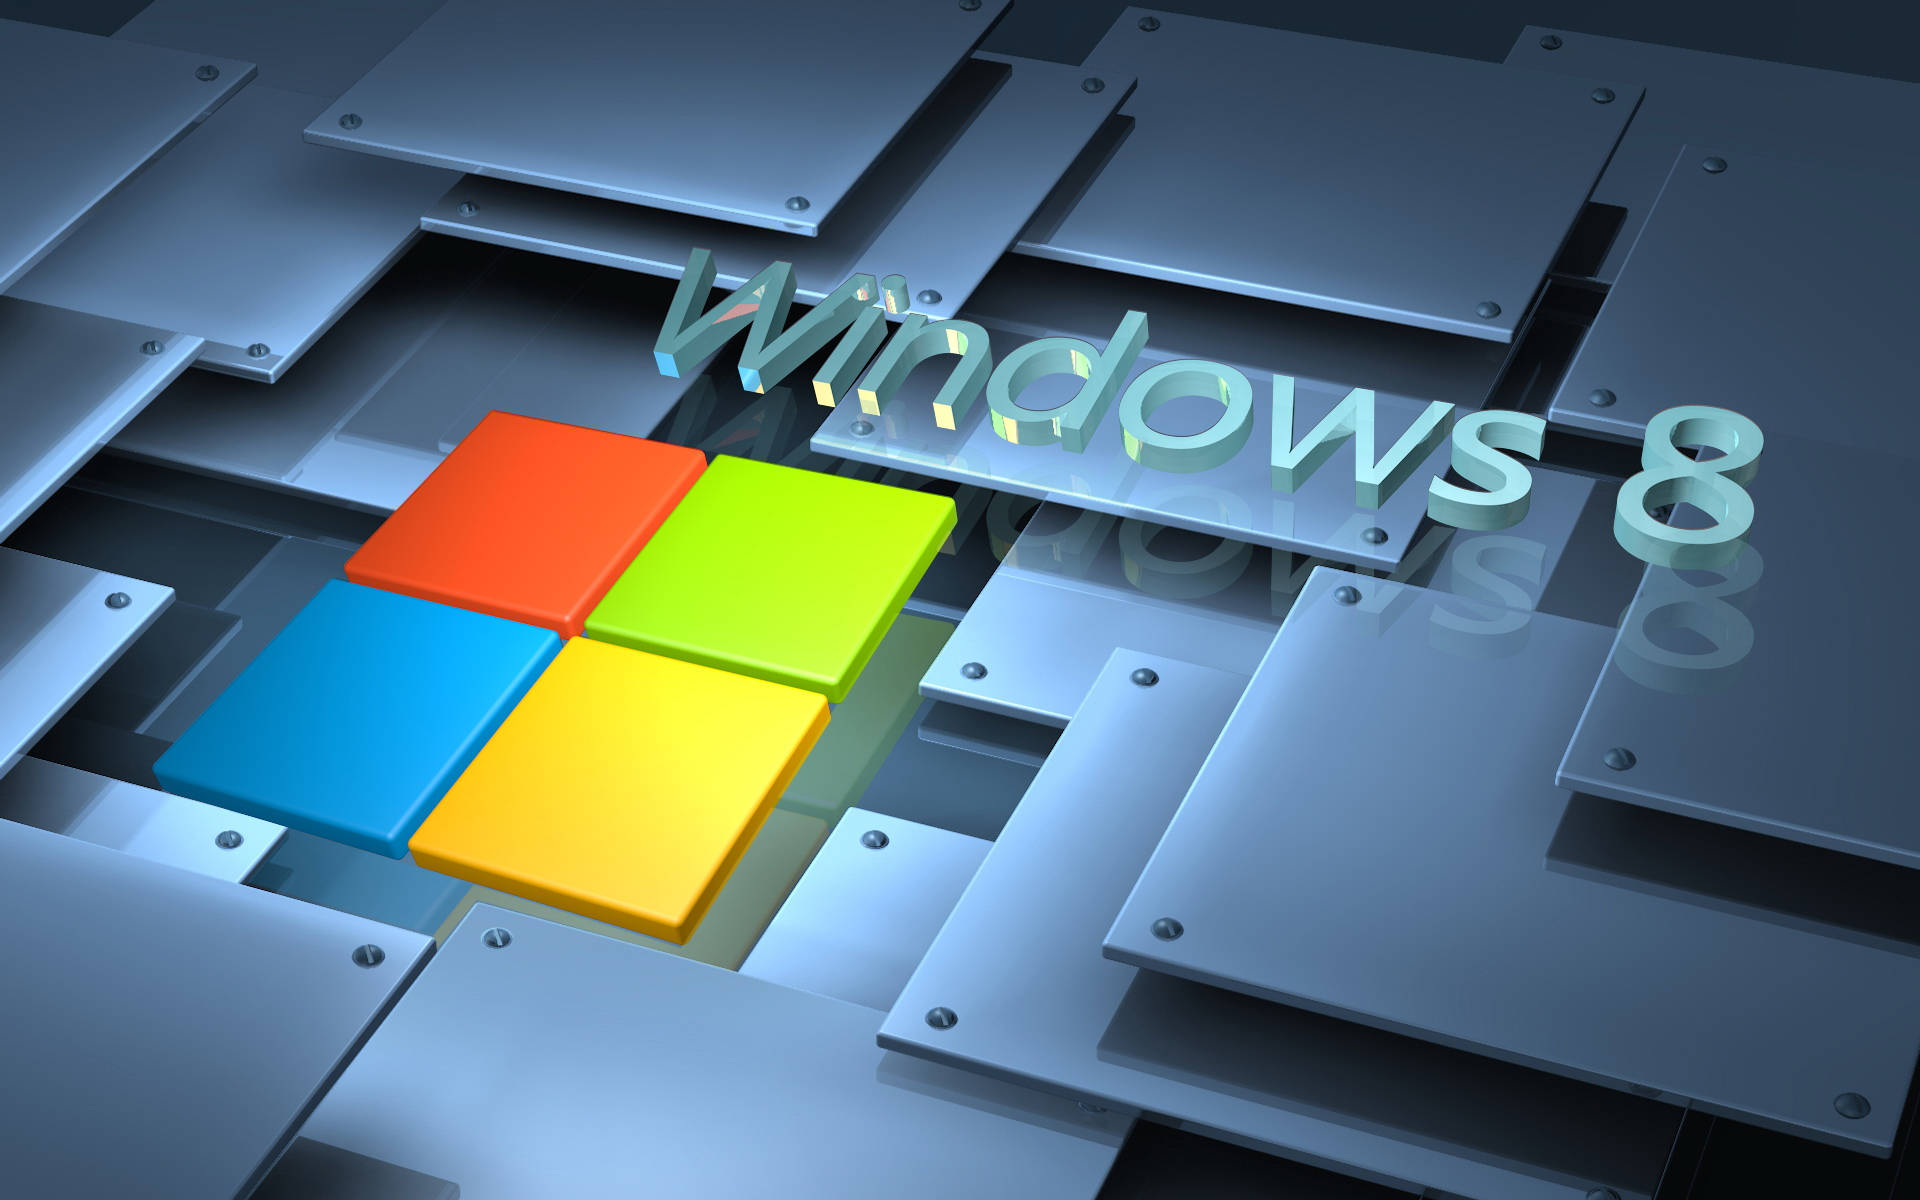 Fondode Pantalla De Windows 8 Con Azulejos De Acero. Fondo de pantalla